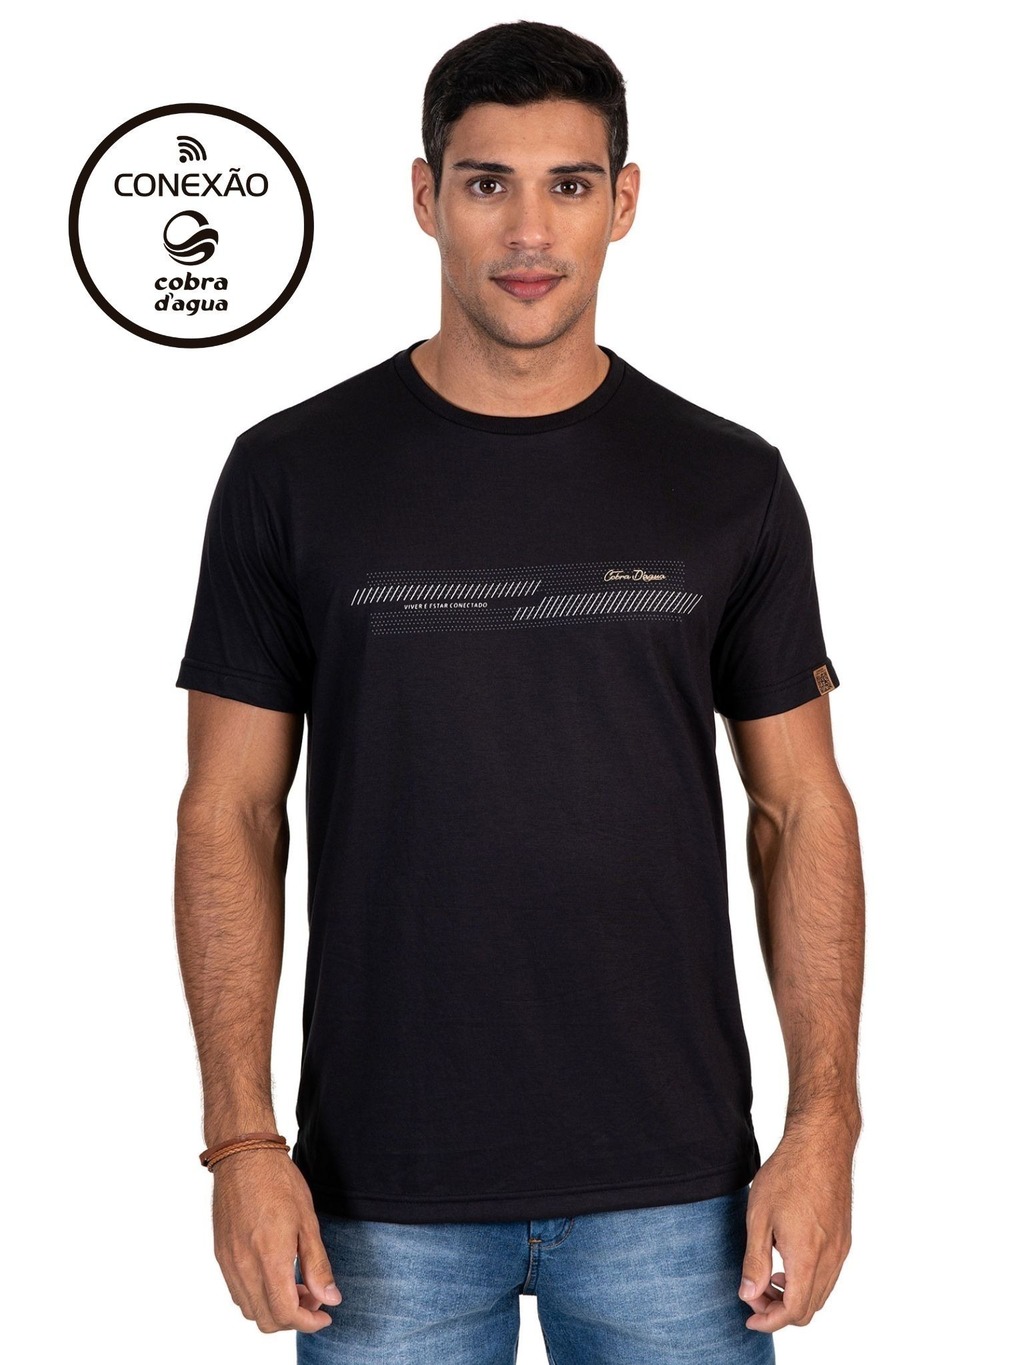 Camiseta Conexão Cobra D'agua Detalhes - Preto